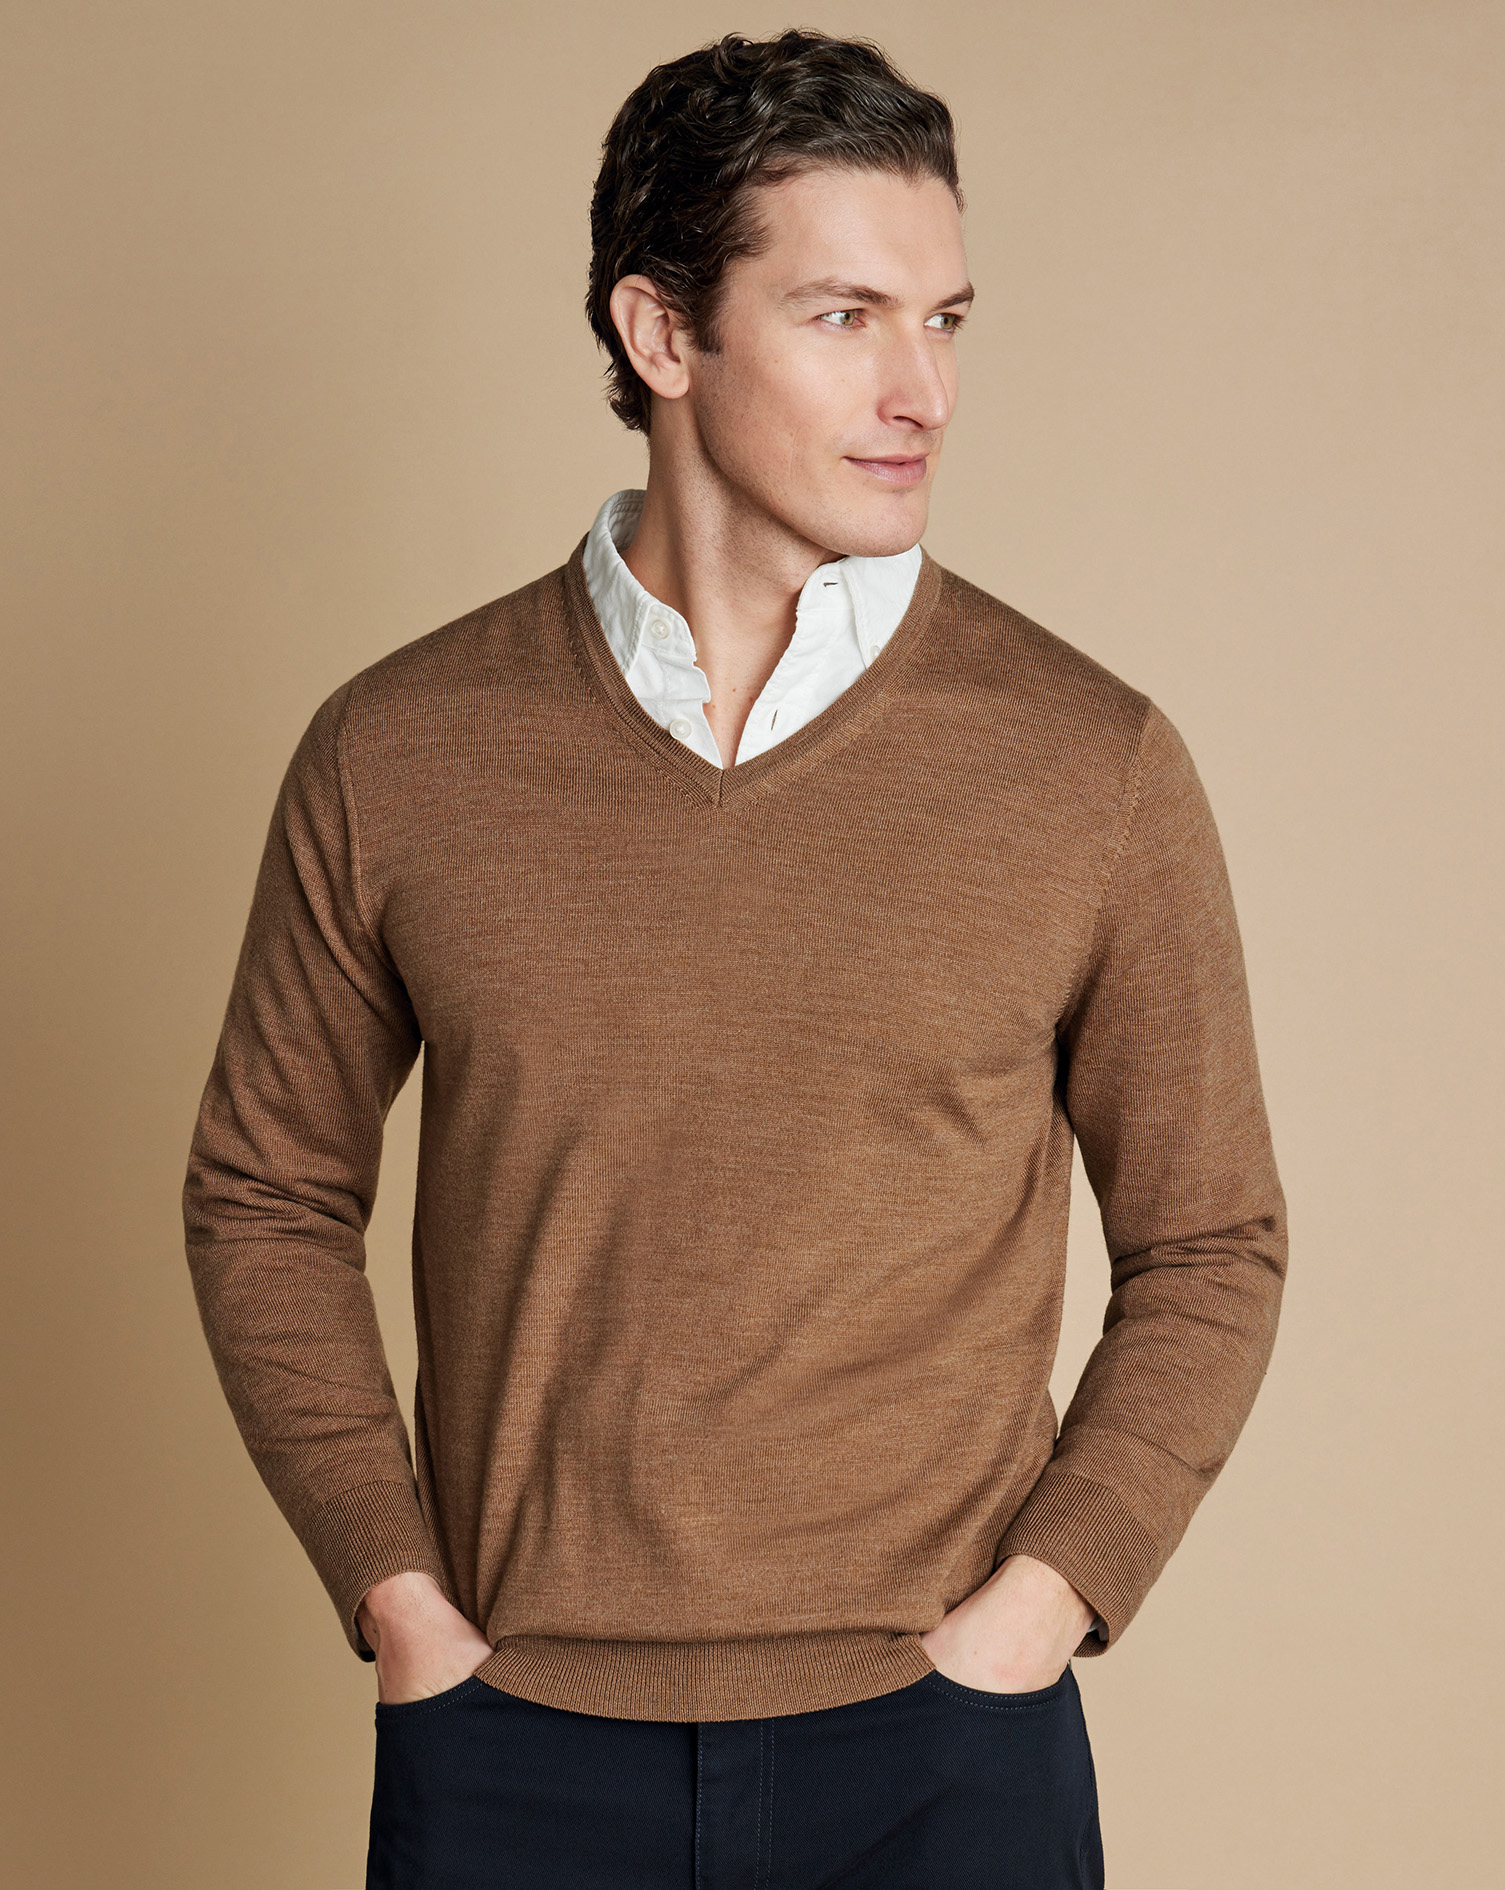 Men's Charles Tyrwhitt Merino V-Neck Sweater - Sand Brown Neutral Size Large Wool
